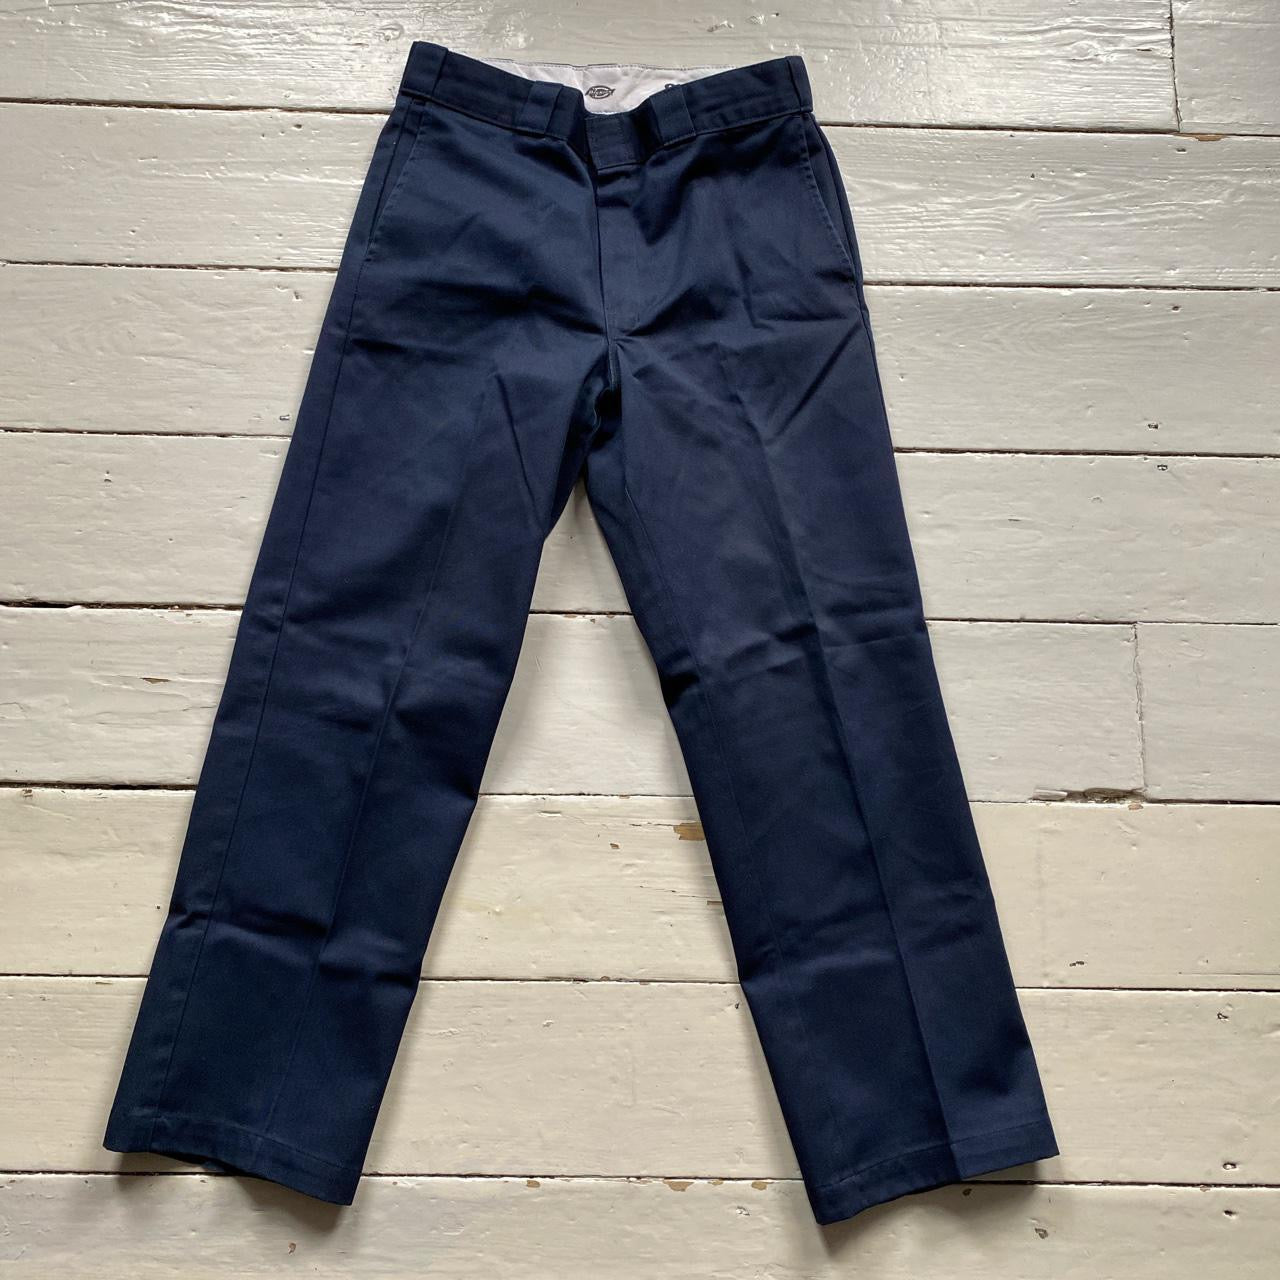 Dickies 874 Navy Trousers (32/30)